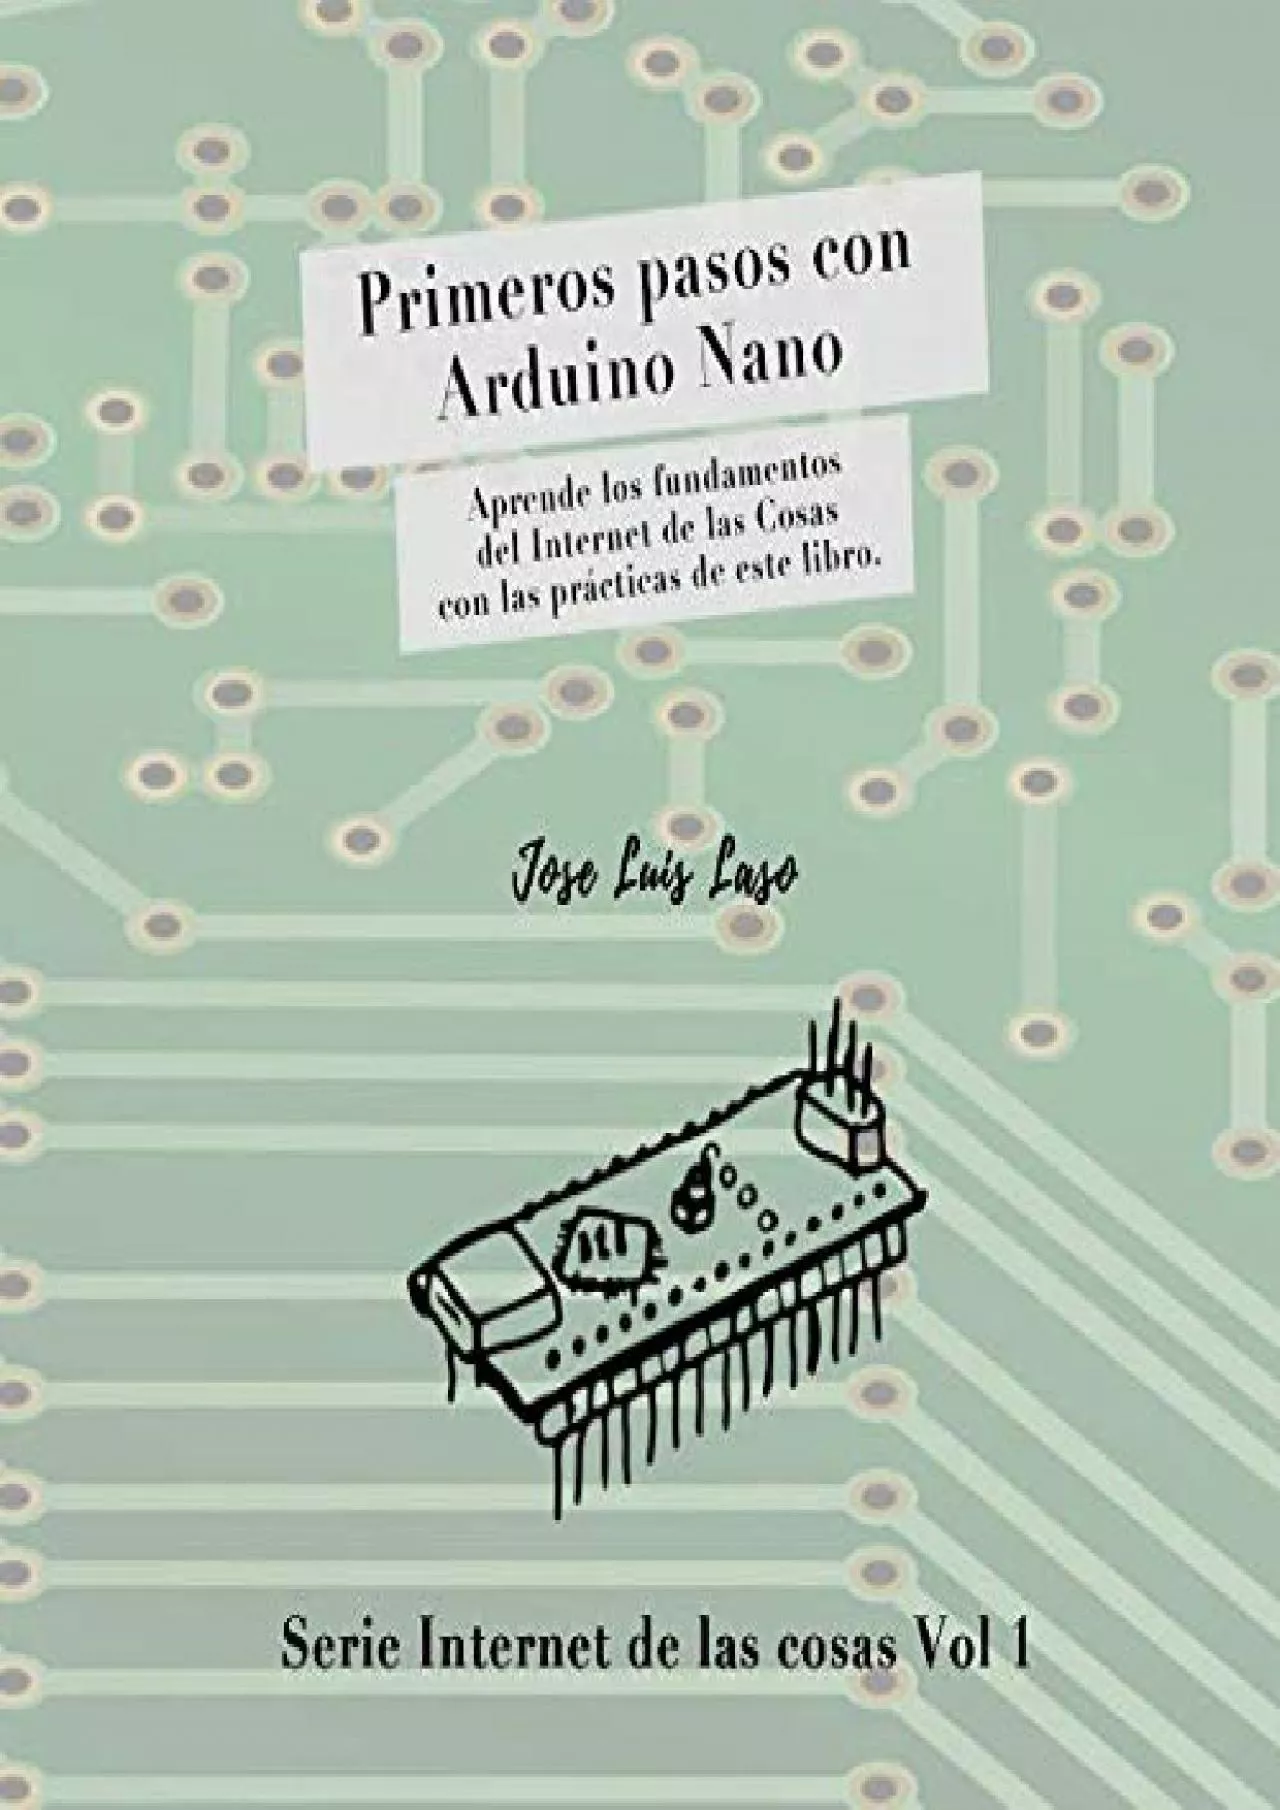 [FREE]-Primeros pasos con Arduino Nano: Aprende los fundamentos del Internet de las Cosas